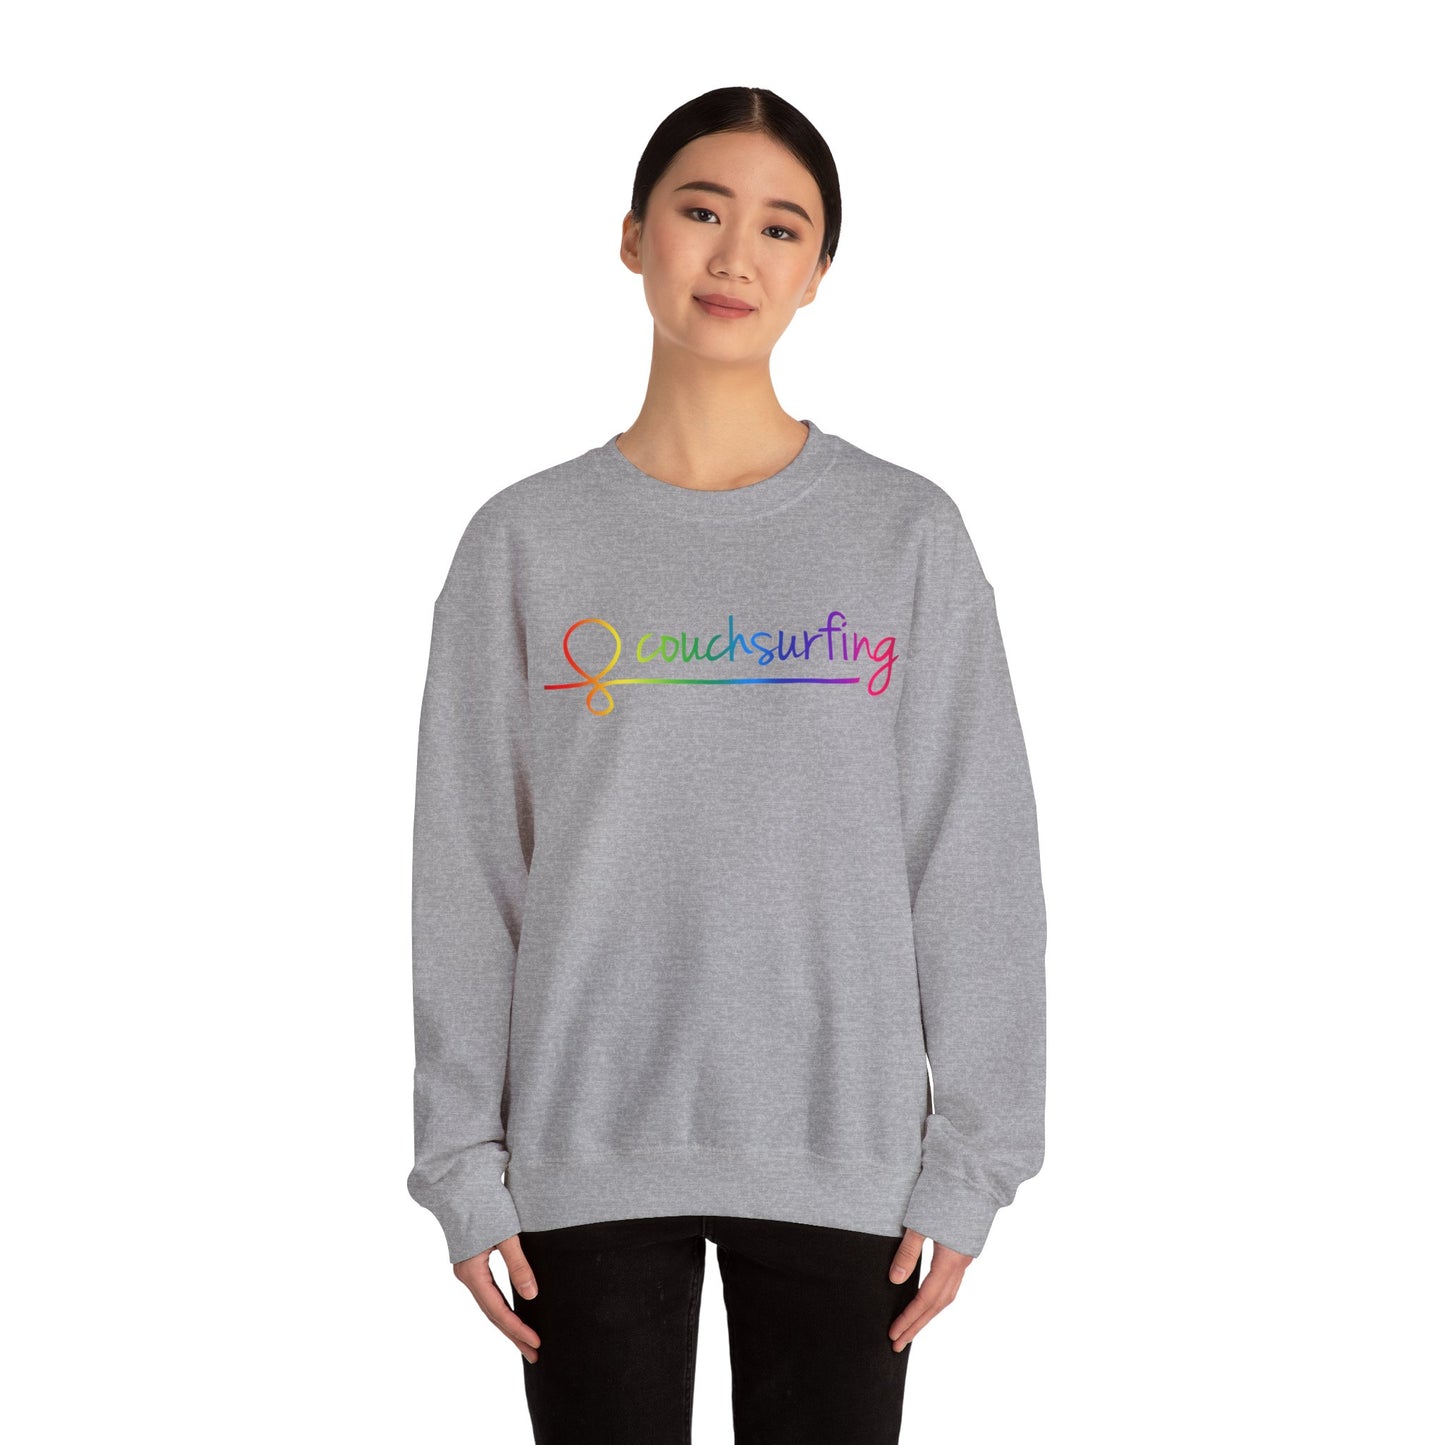 The Pride Crewneck Sweatshirt